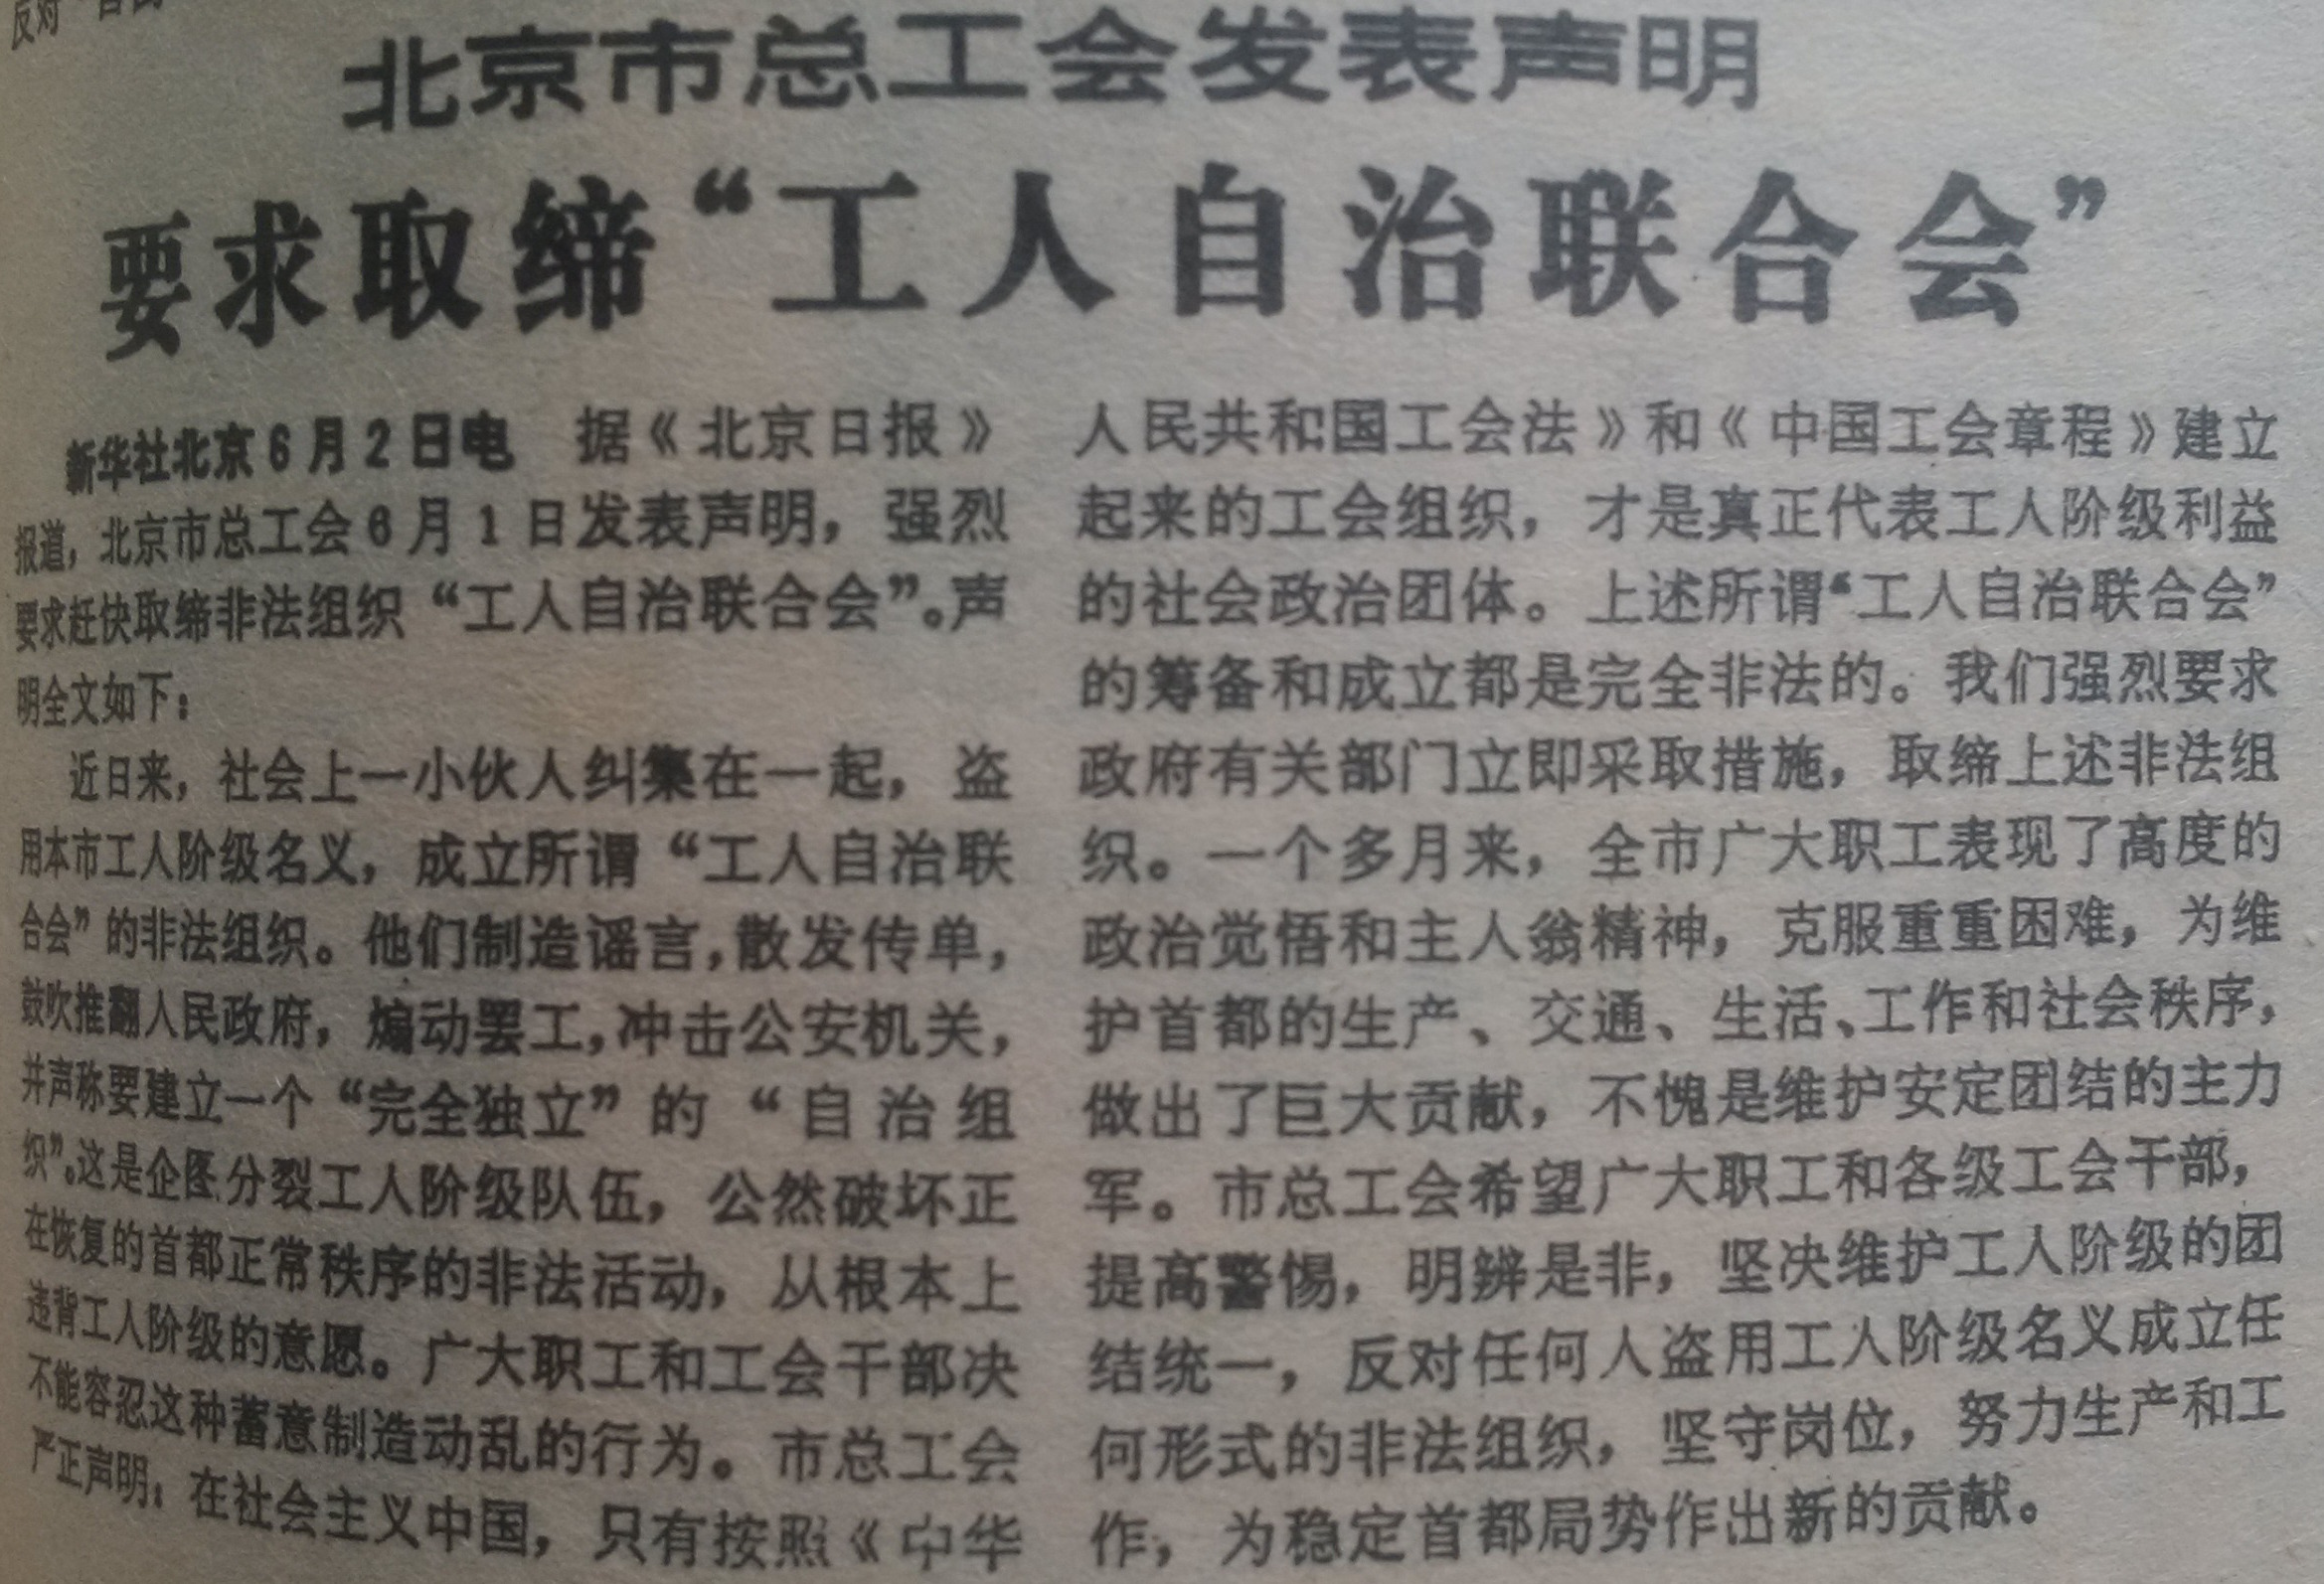 1989年6月3日《人民日報》頭版刊載的北京市總工會要求取締工自聯的聲明。